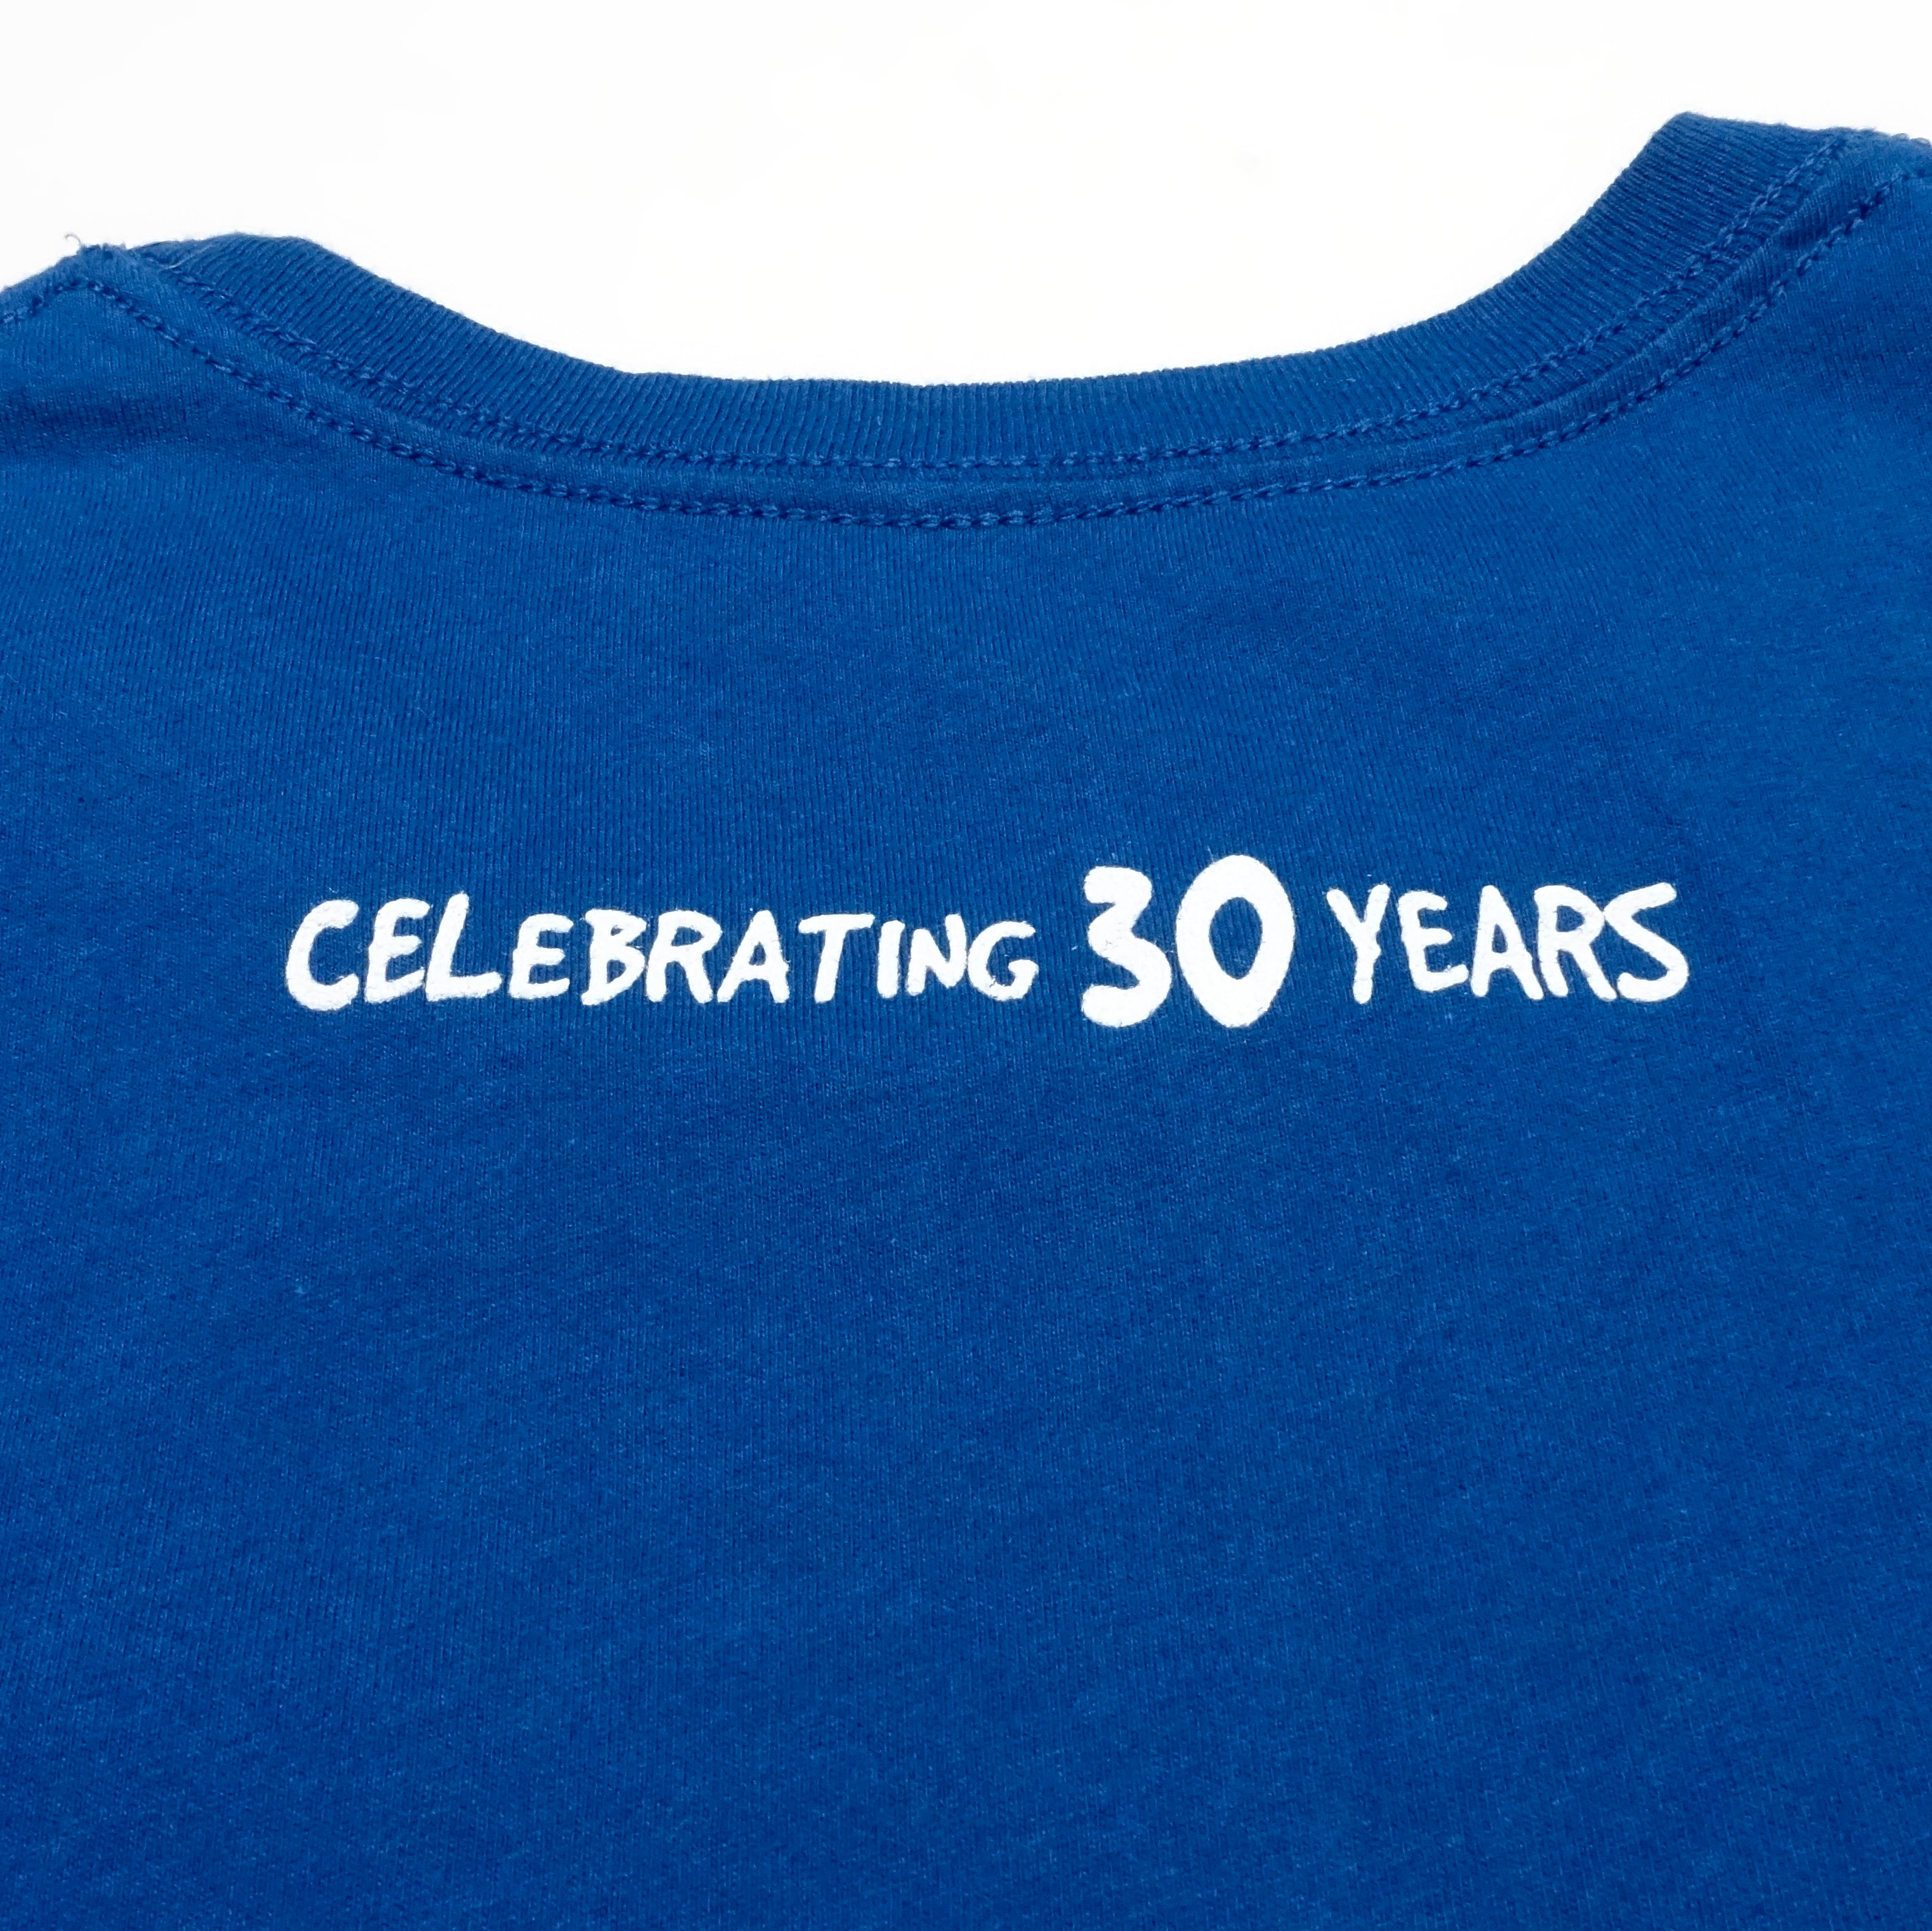 Dinosaur Jr.  ‎– 2015 30th Anniversary Tour Shirt Size Large